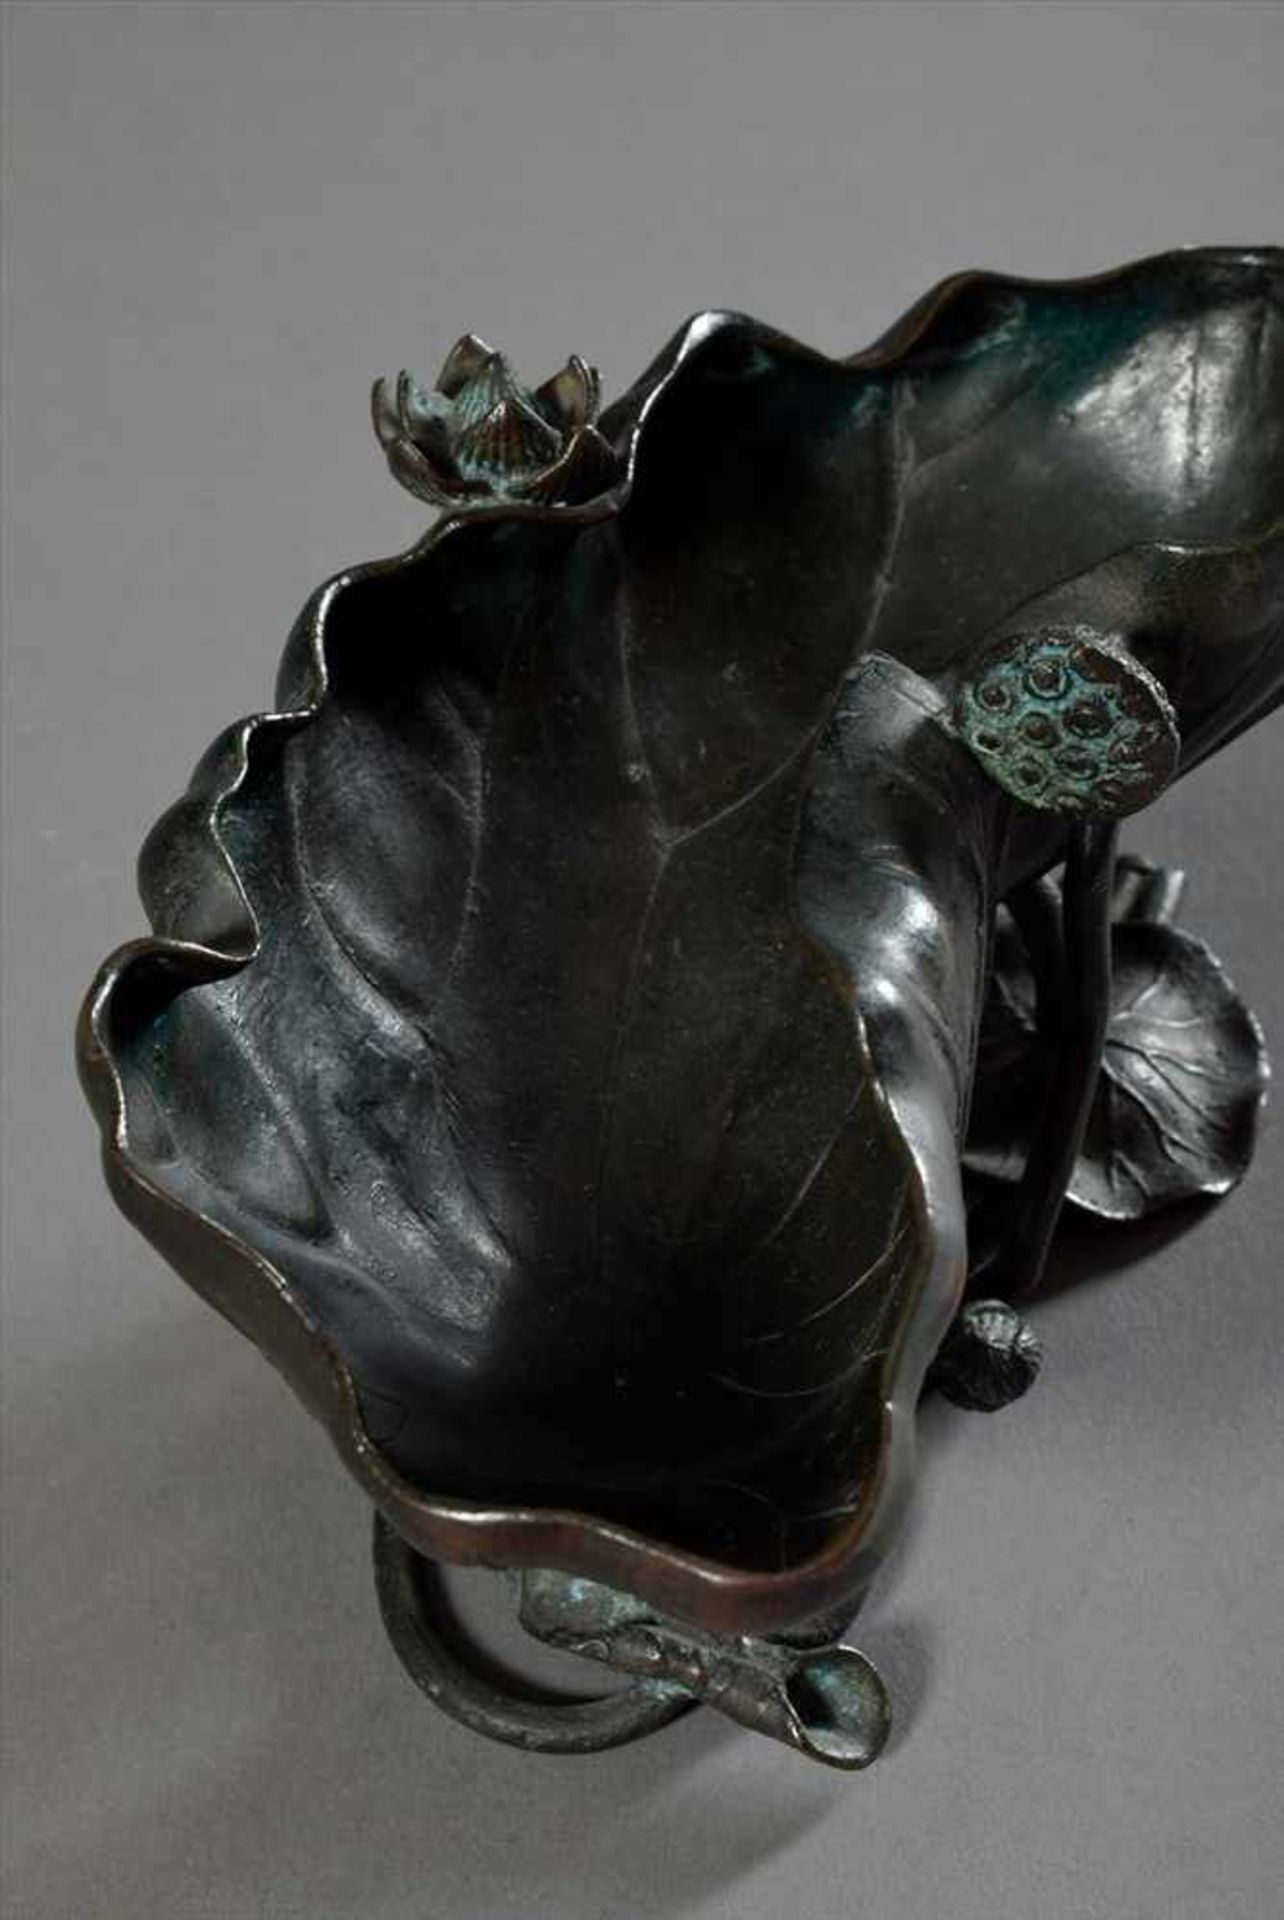 Japanische Bronze Schale "Lotusblatt", gemarkt "Japan", 20. Jh., 9,5x20x9cmJapanese bronze bowl " - Image 4 of 6